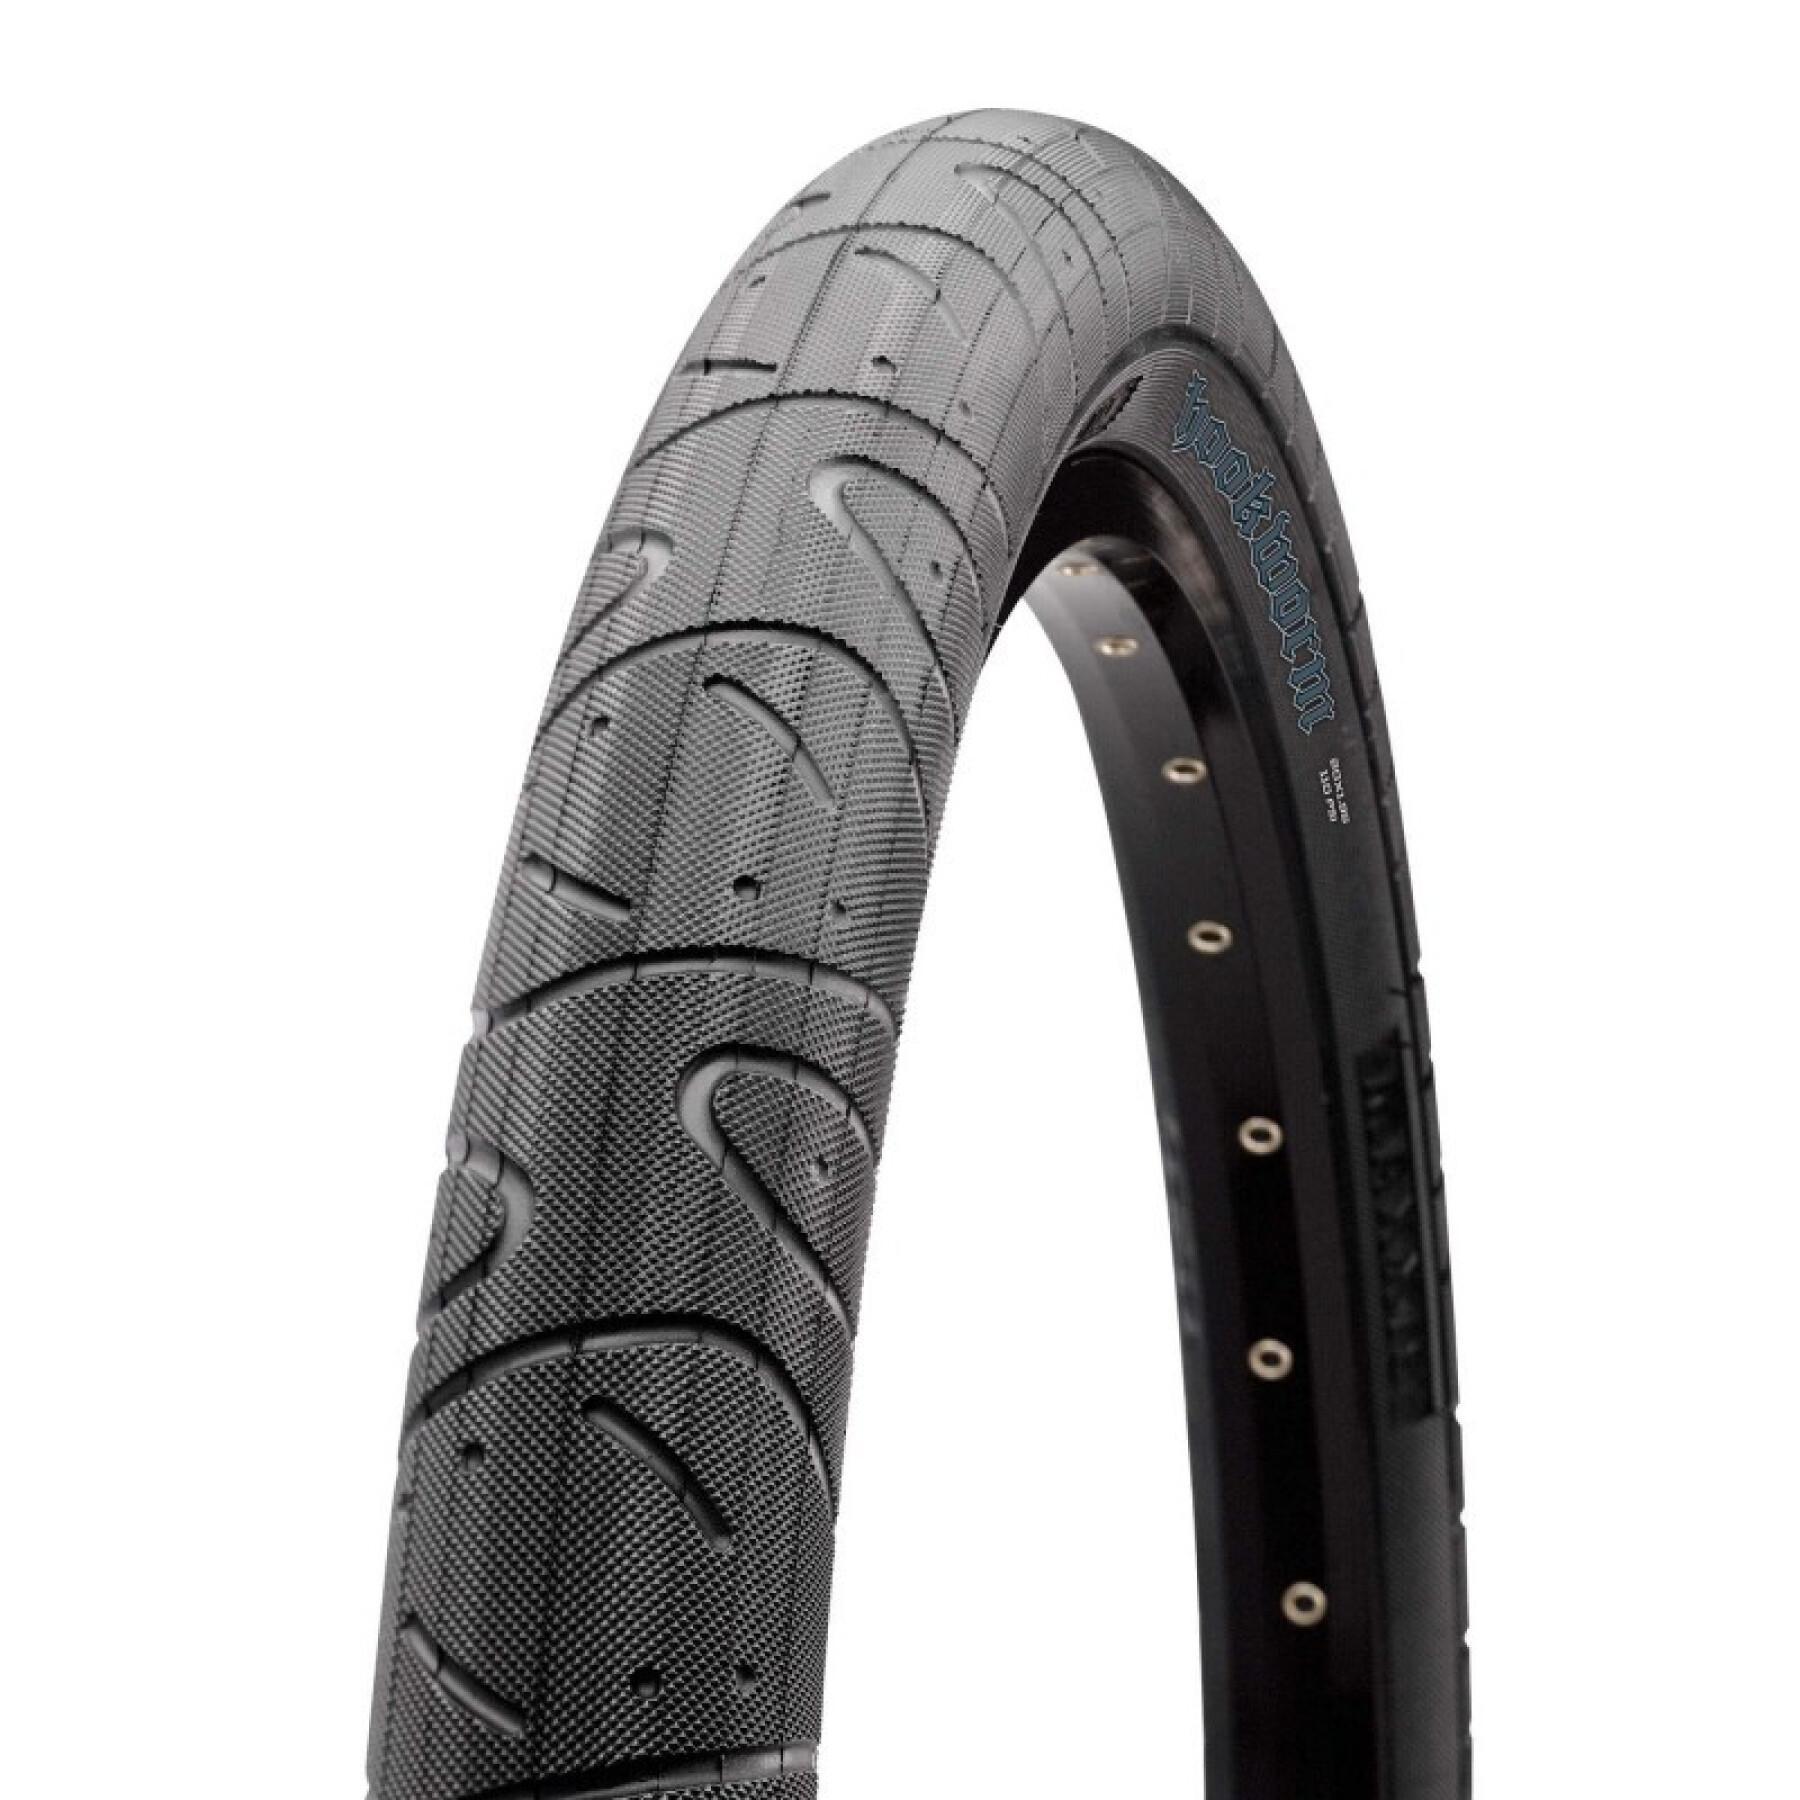 Rigid tire Maxxis Hookworm 27.5 x 2.50